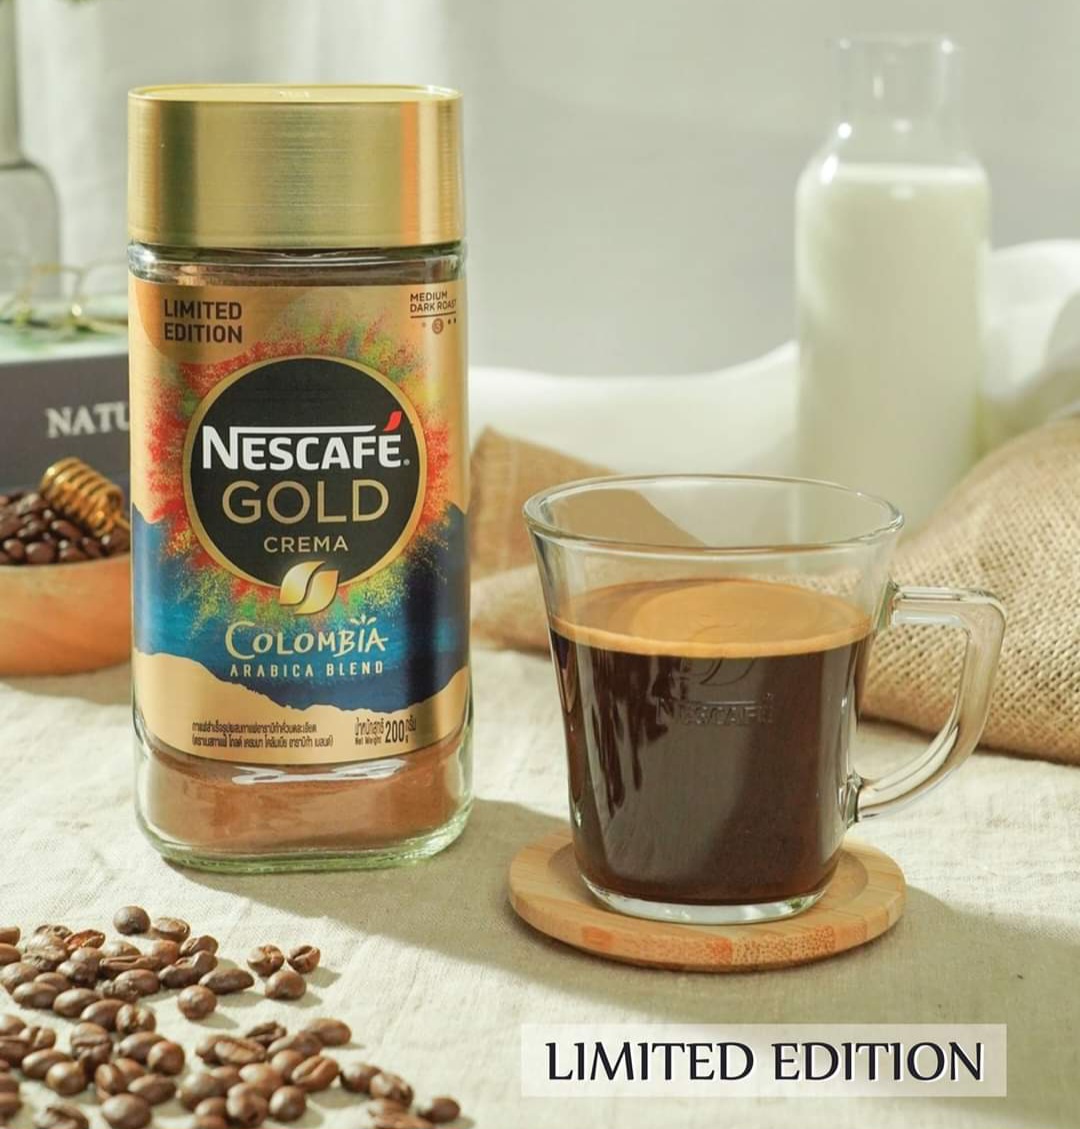 NESCAFÉ GOLD CREMA COLOMBIA ARABICA กาแฟ Limited Edition เนสกาแฟ โกล เครม่า โคลัมเบีย อาราบิก้า